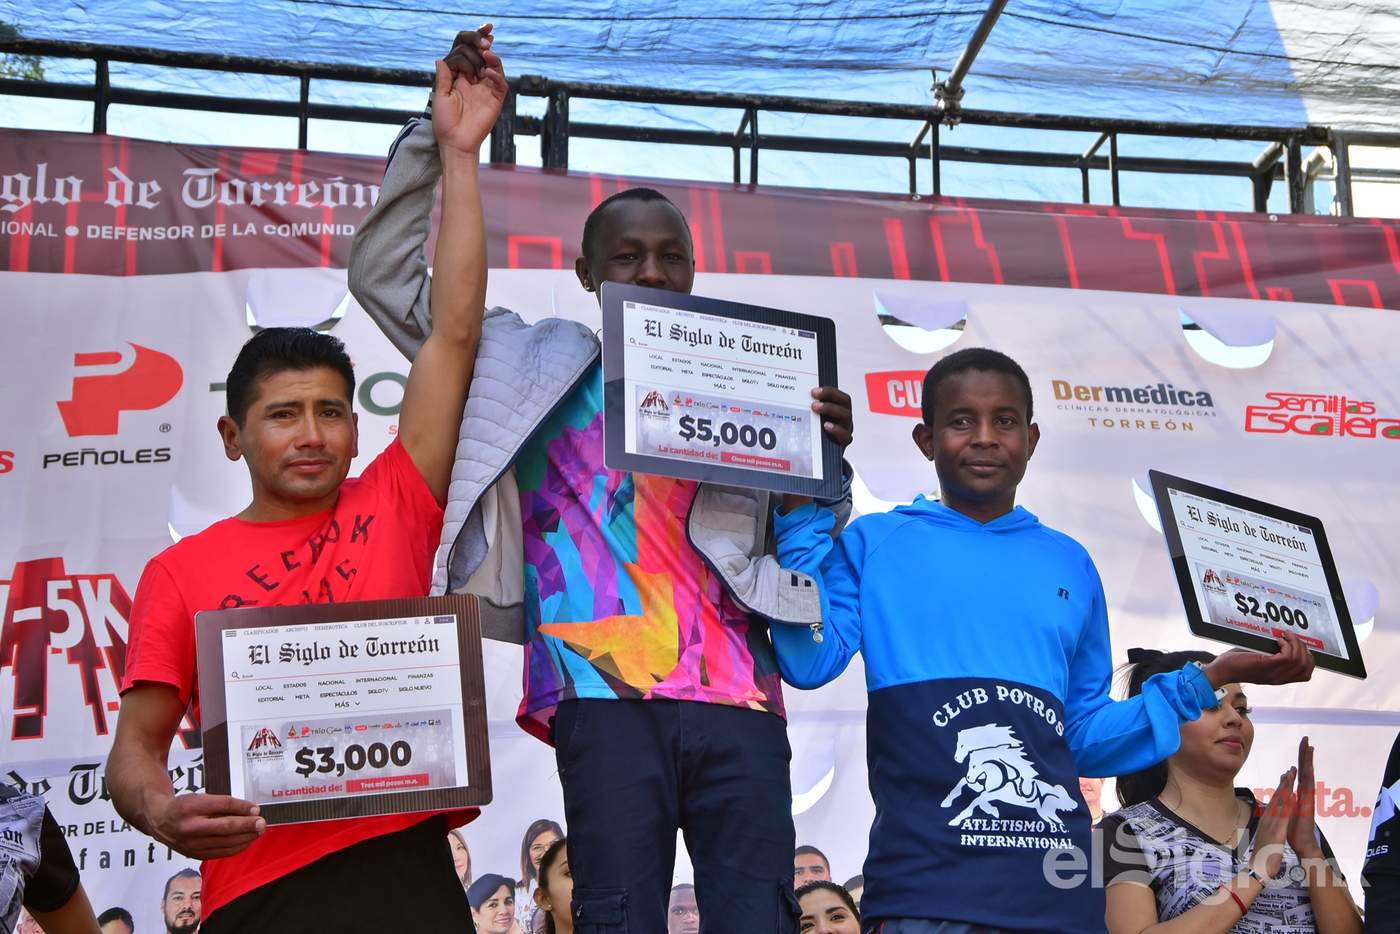 Los atletas africanos dominaron el podio en los 21K de El Siglo de Torreón, en la rama varonil. (Ernesto Ramírez)